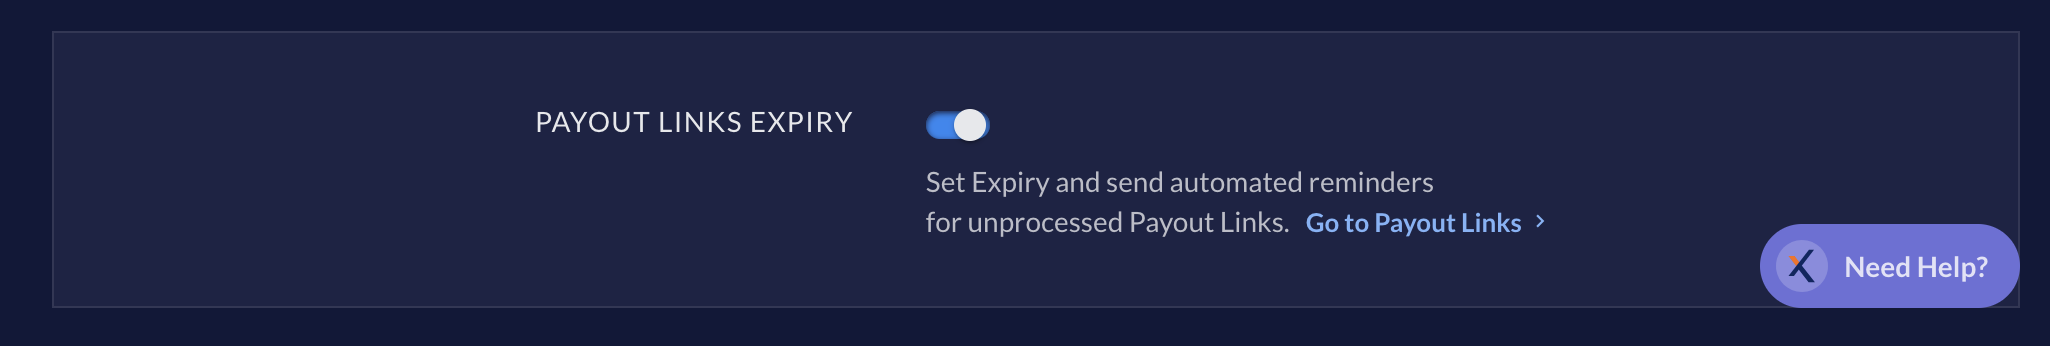 Enable Payout Link expiry toggle on RazorpayX Dashboard